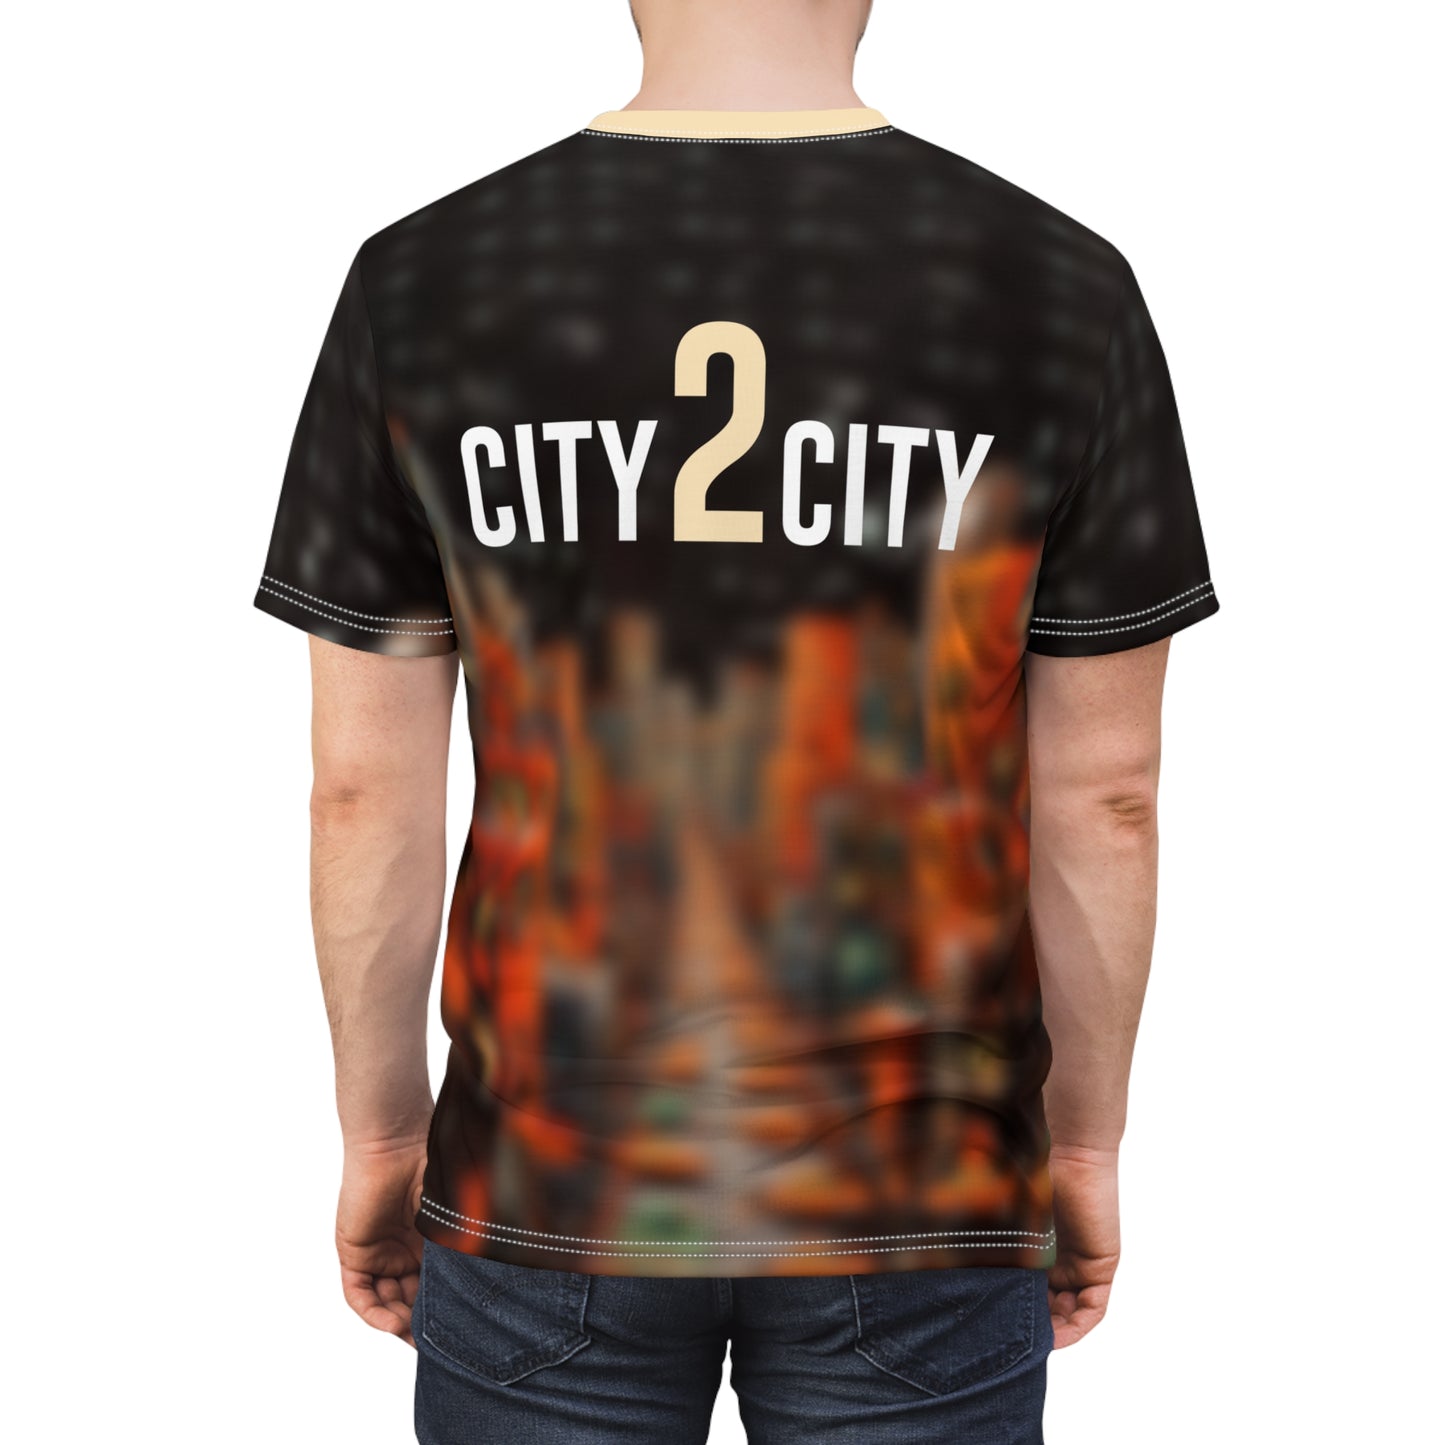 City2City - Unisex Cut & Sew Tee